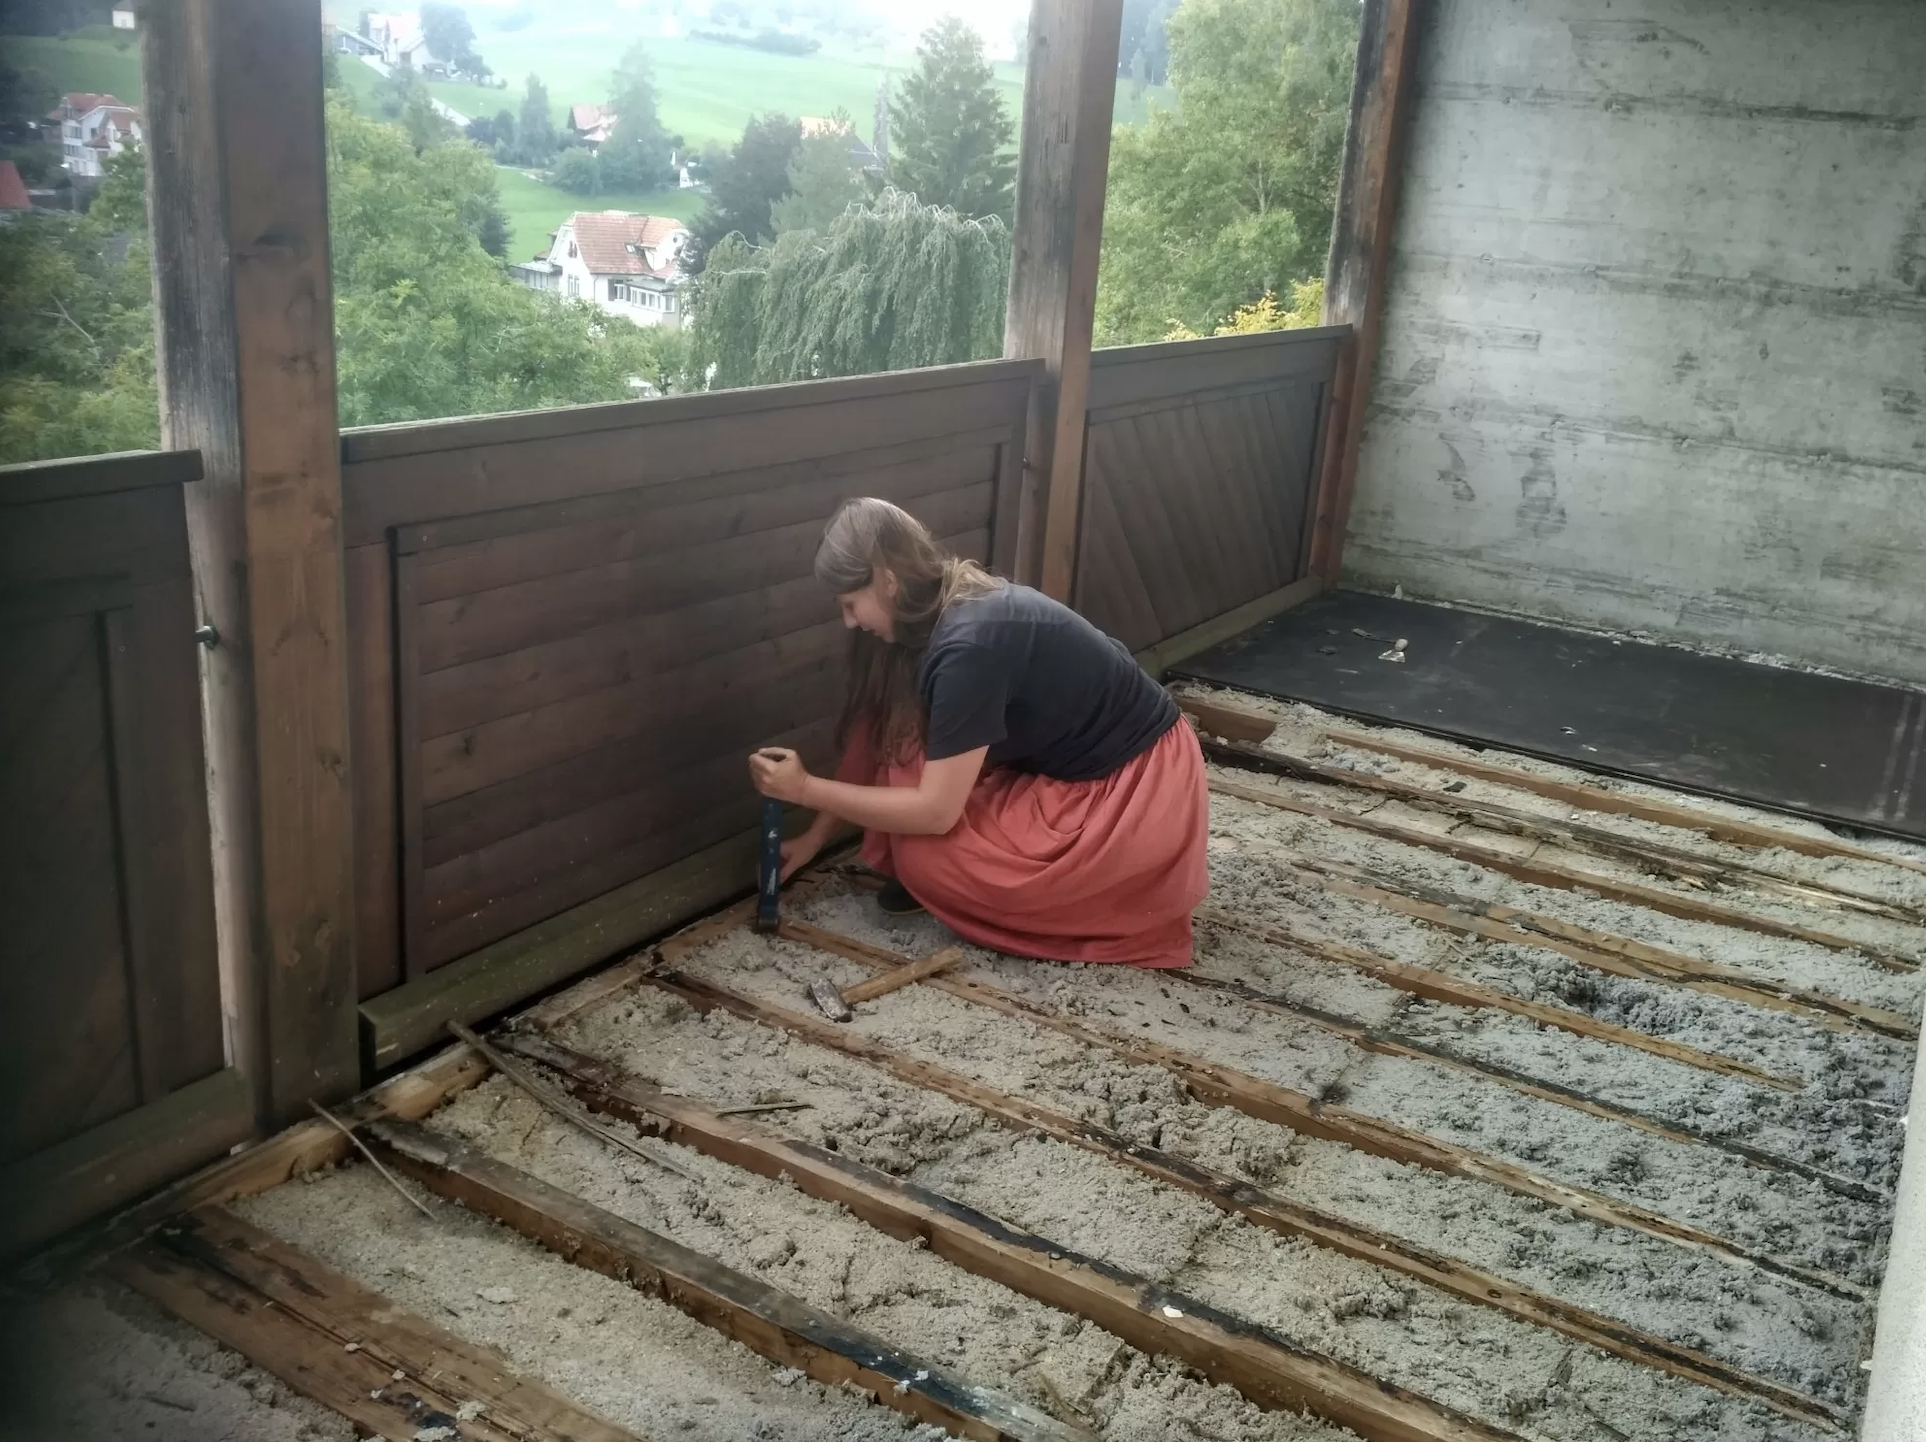 Une volontaire femme est accroupi au sol. Le sol est en reconstruction et elle semble le réparer avec des outils. On aperçoit un paysage Suisse par la fenêtre très vert avec beaucoup de sapin et quelques maisons.